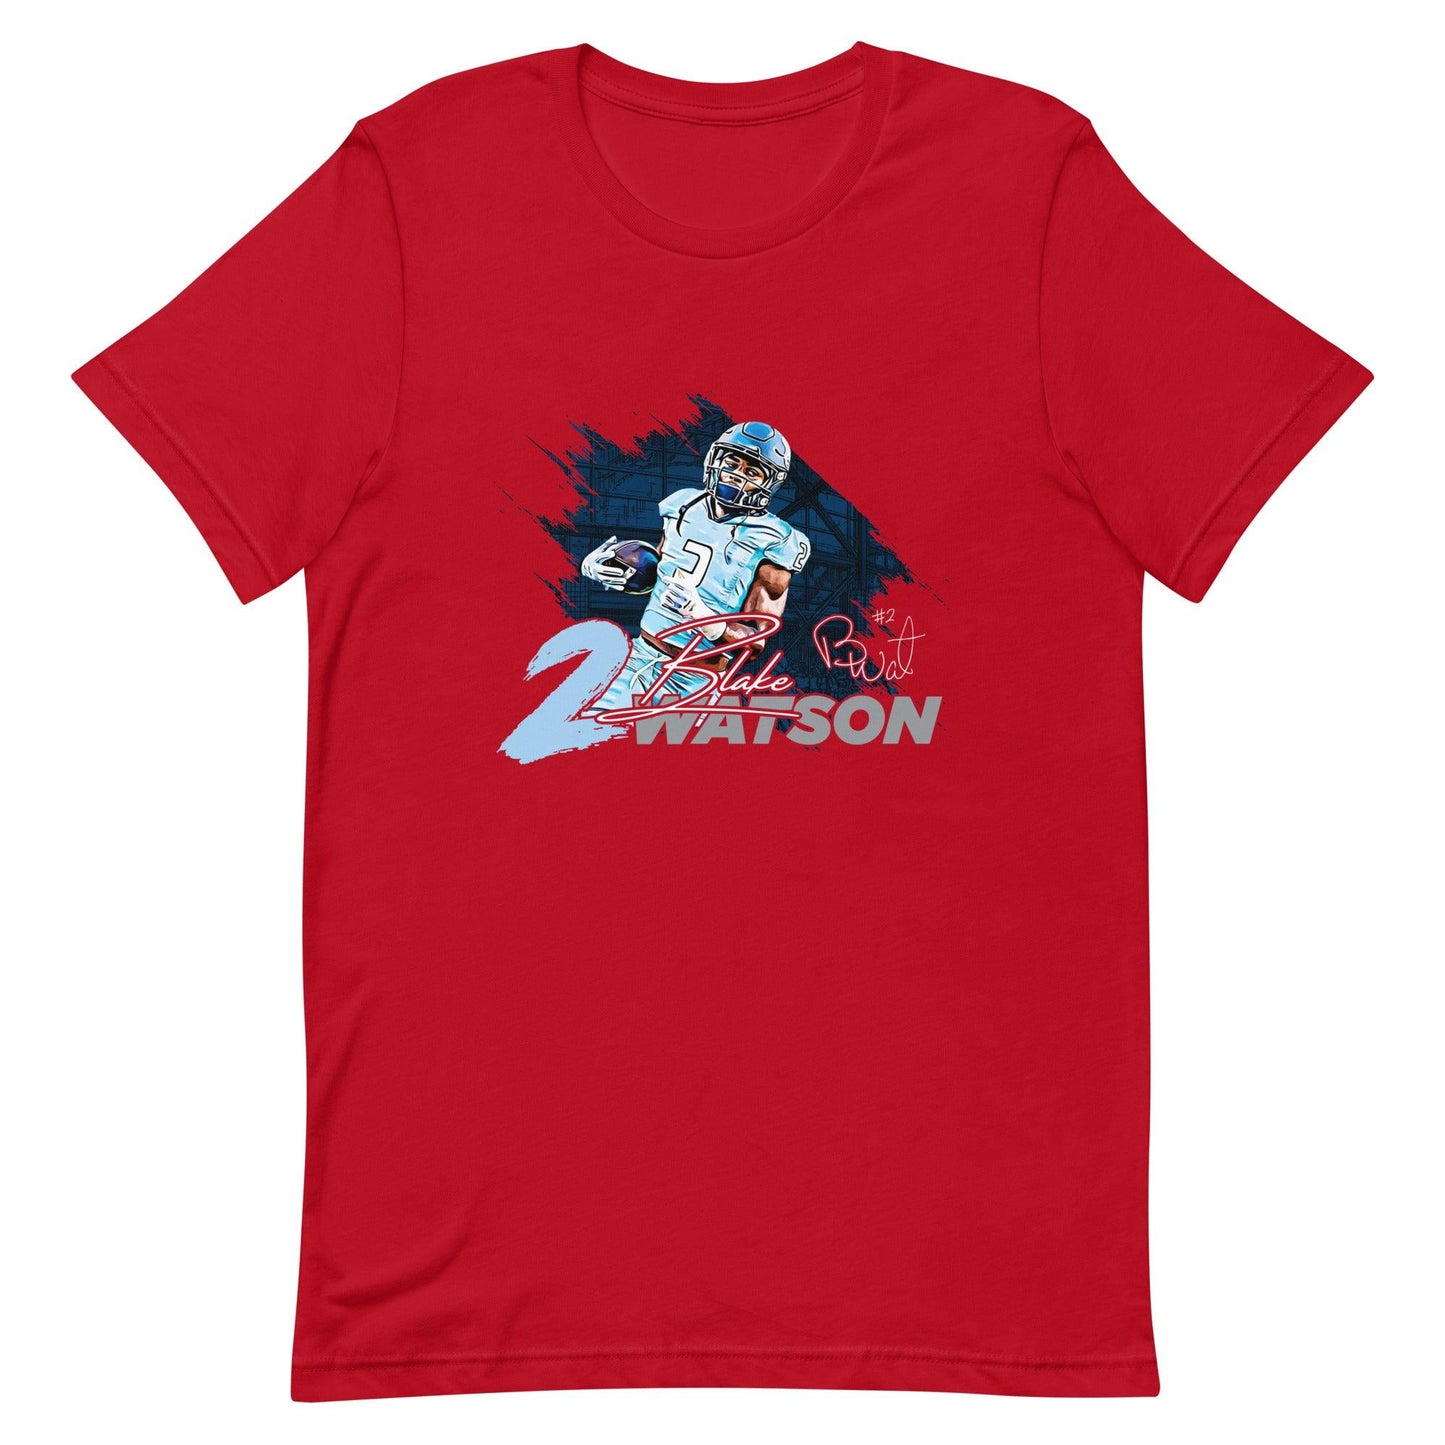 Blake Watson "Signature" t-shirt - Fan Arch